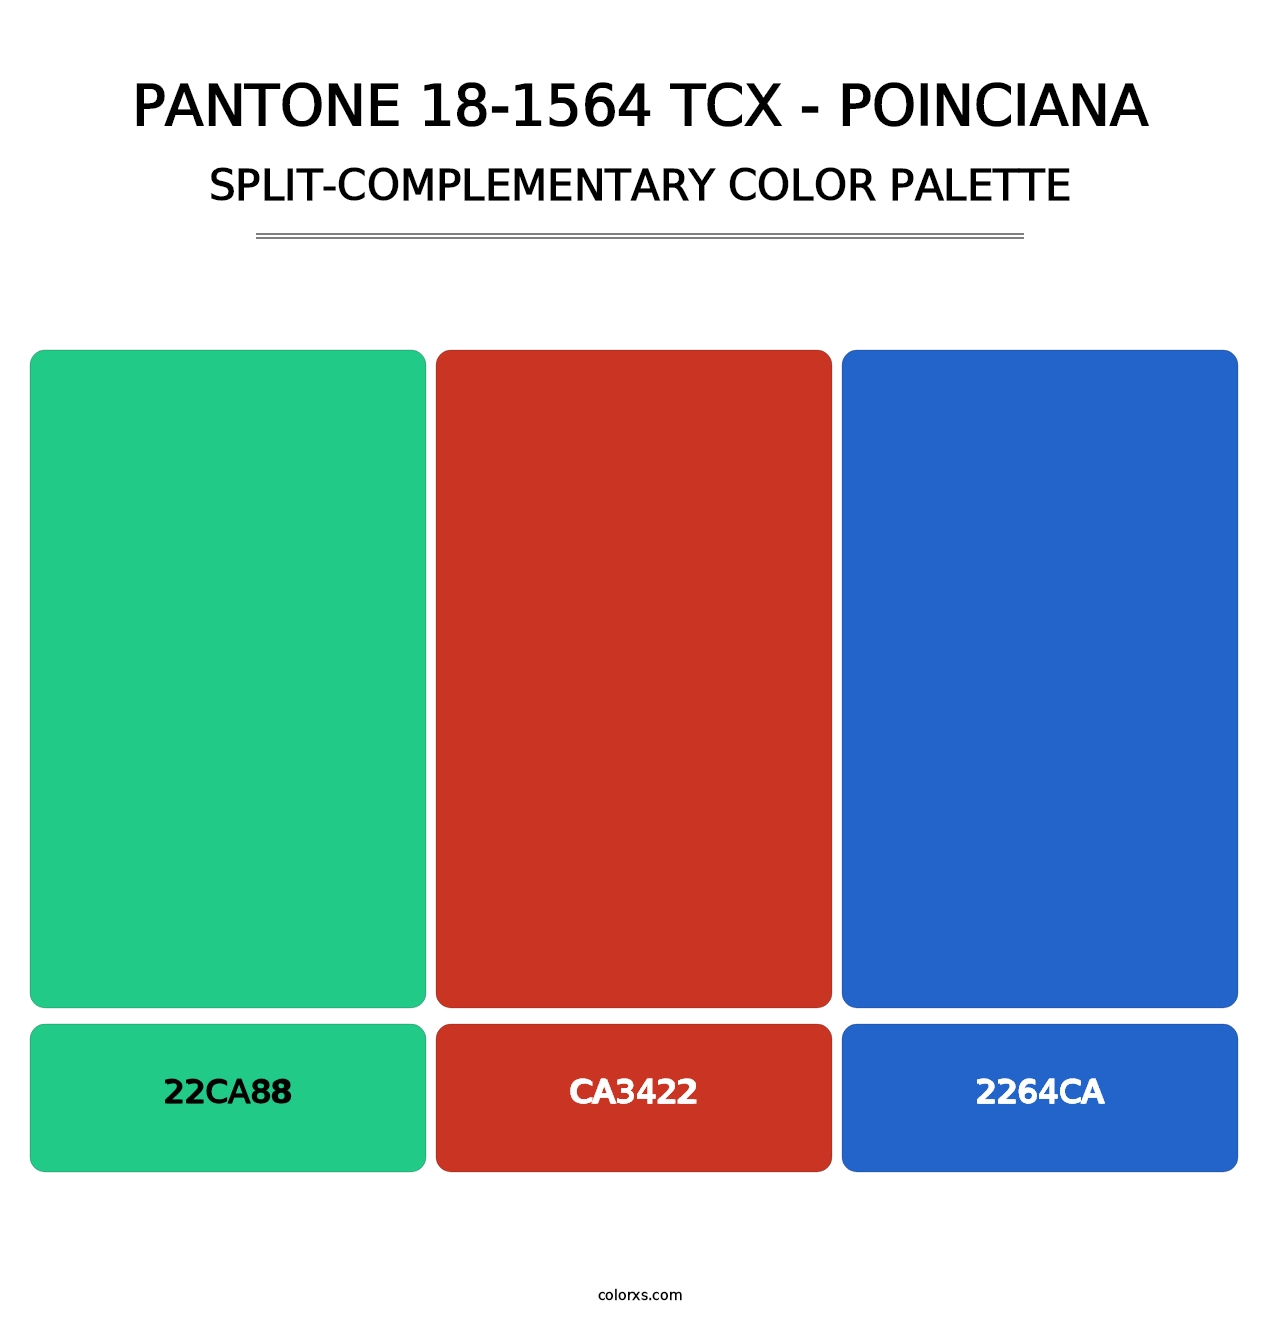 PANTONE 18-1564 TCX - Poinciana - Split-Complementary Color Palette